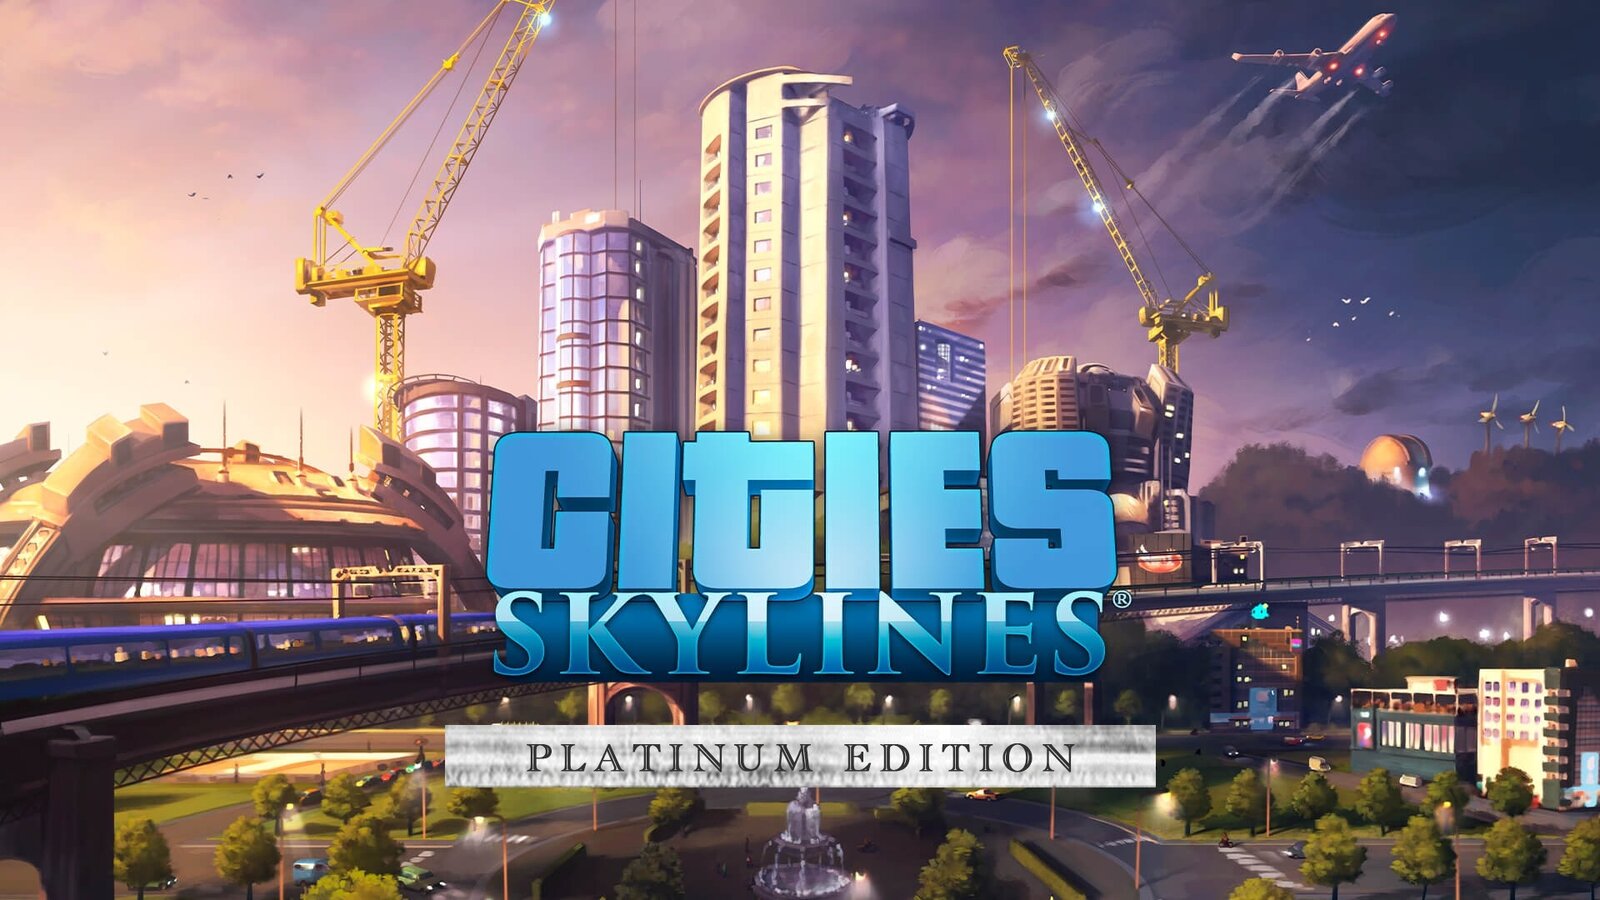 Cities: Skylines - Platinum Edition